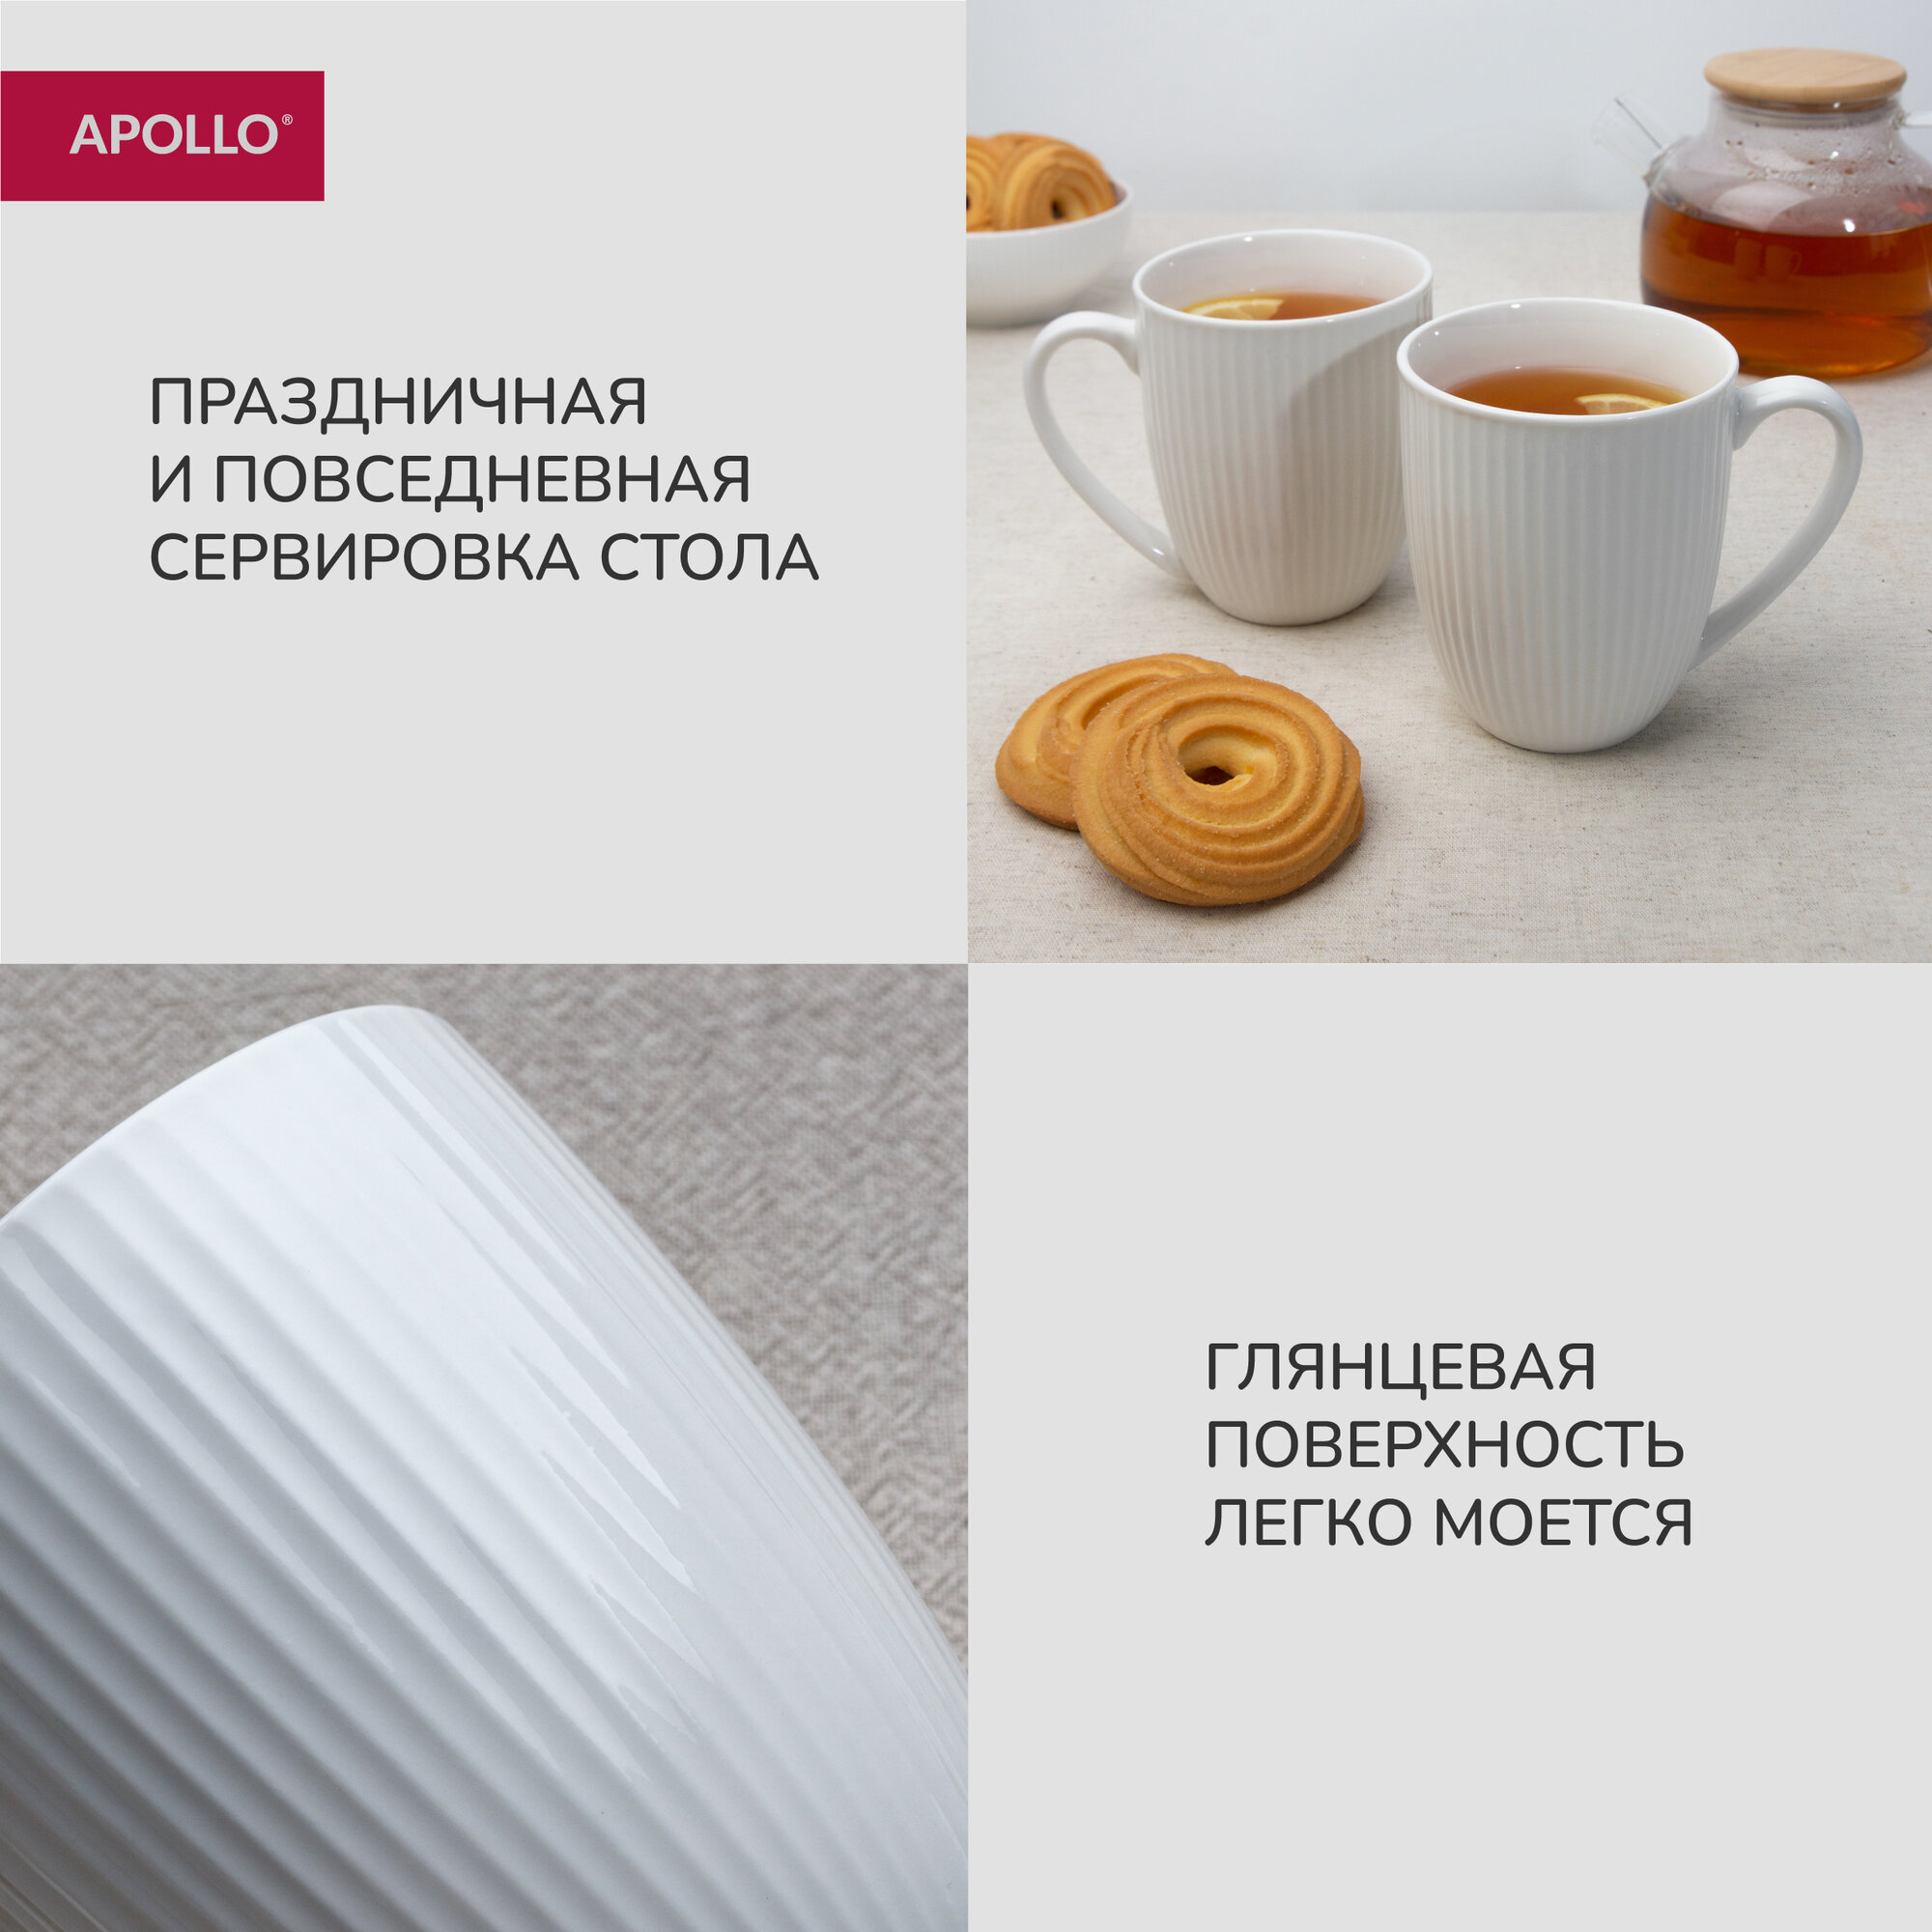 Кружка фарфоровая, набор чашек для чая и кофе Apollo "Raffinato" 420 мл, 2 предмета